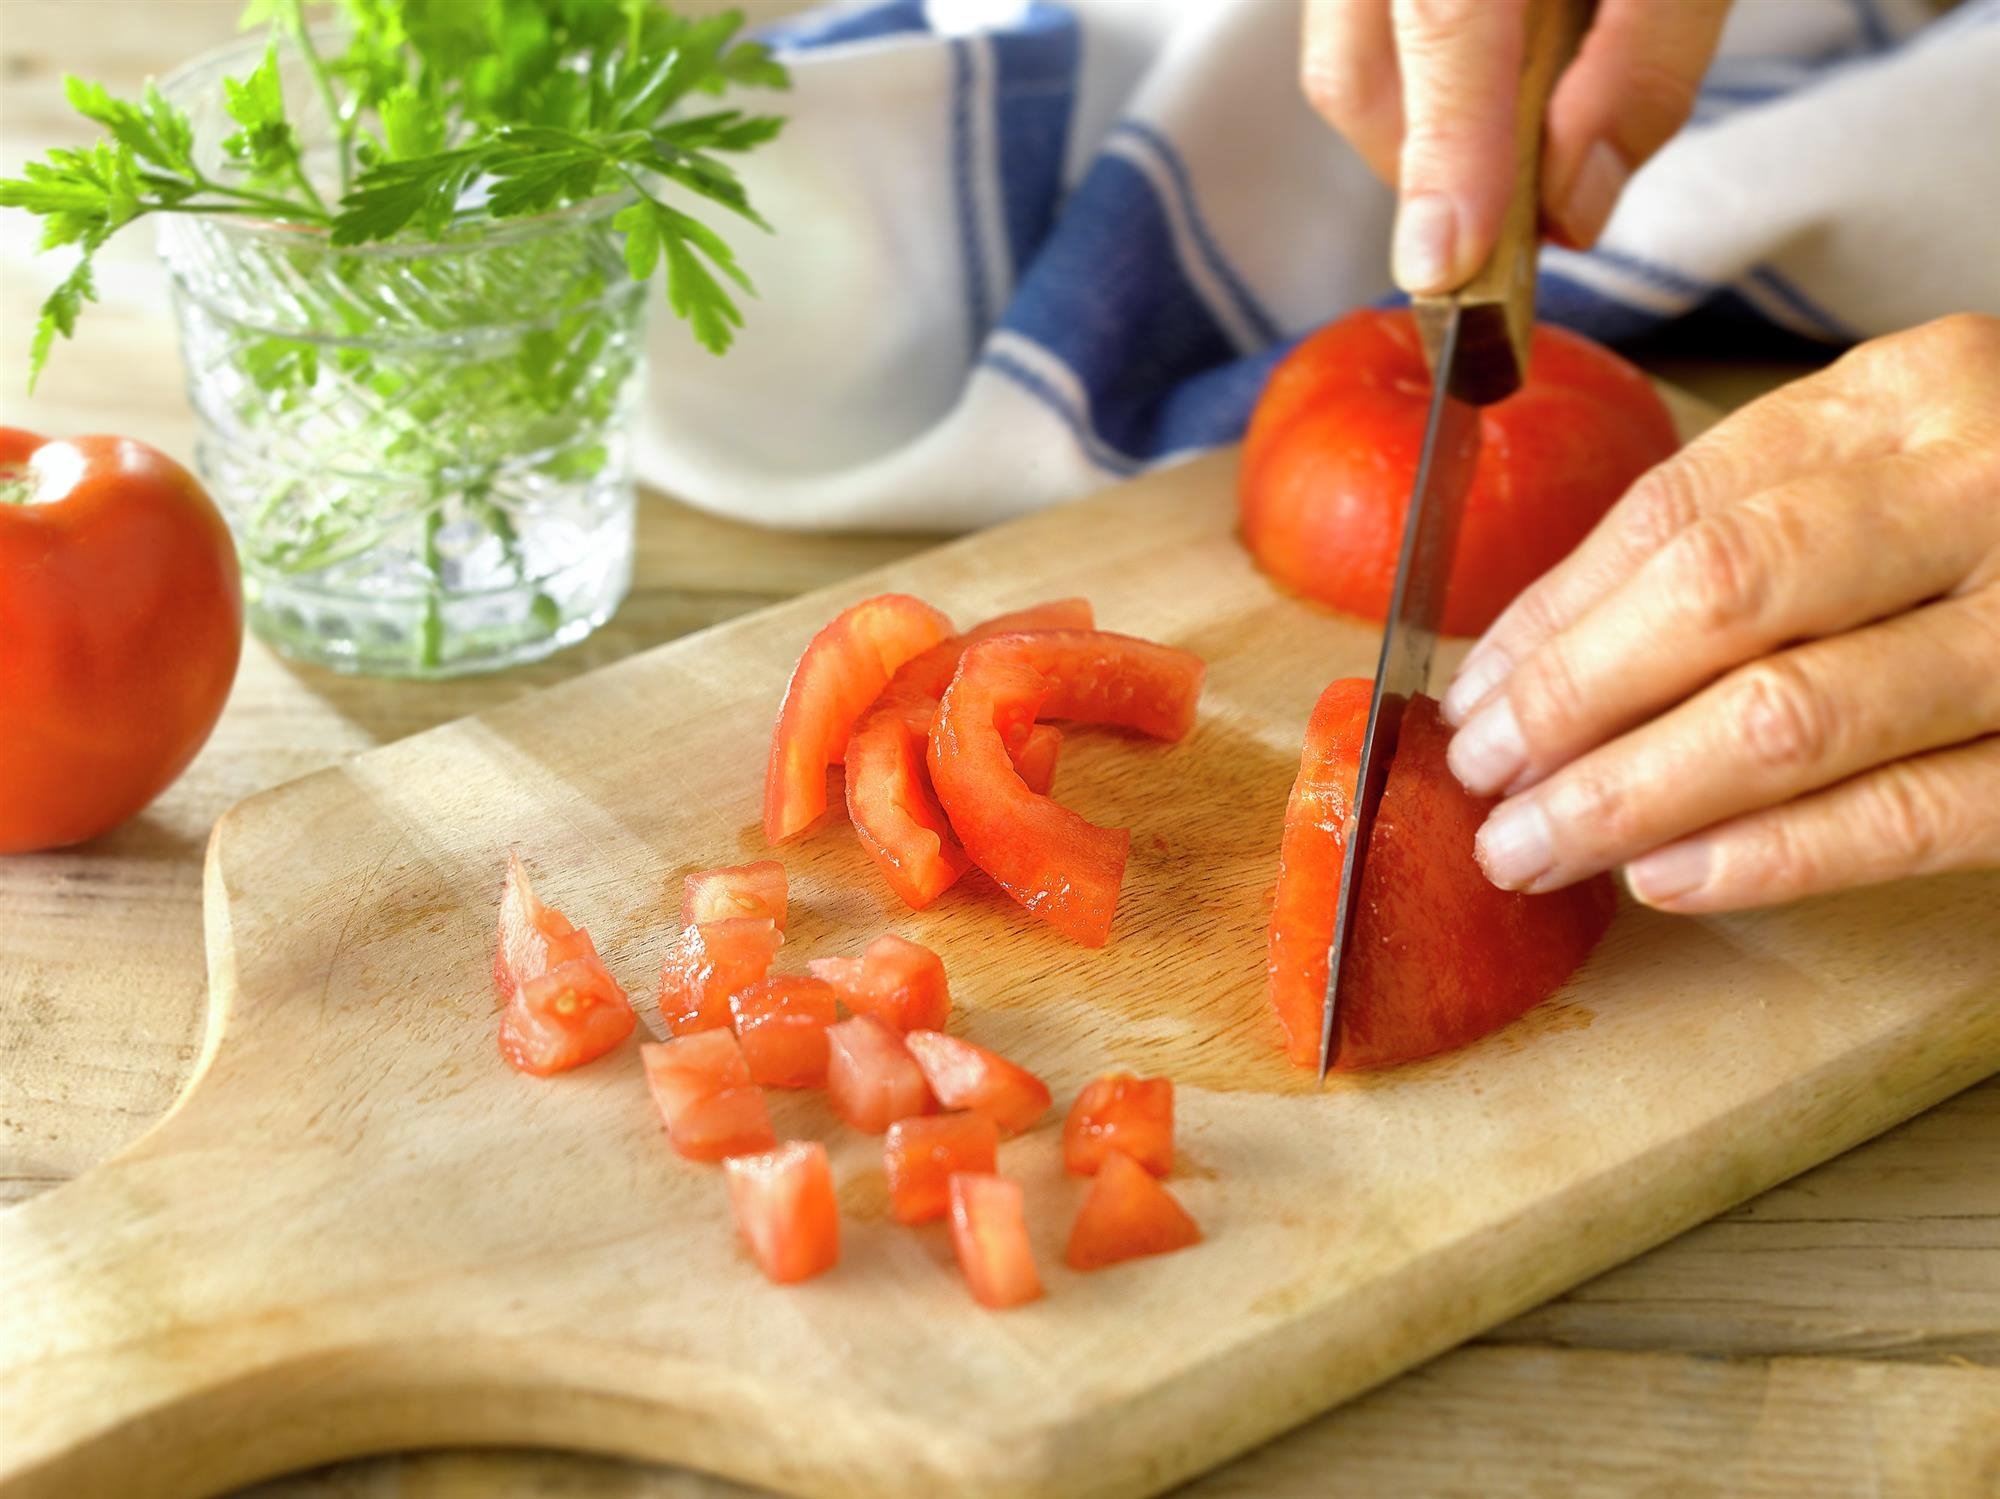 3. Corta el tomate y añade